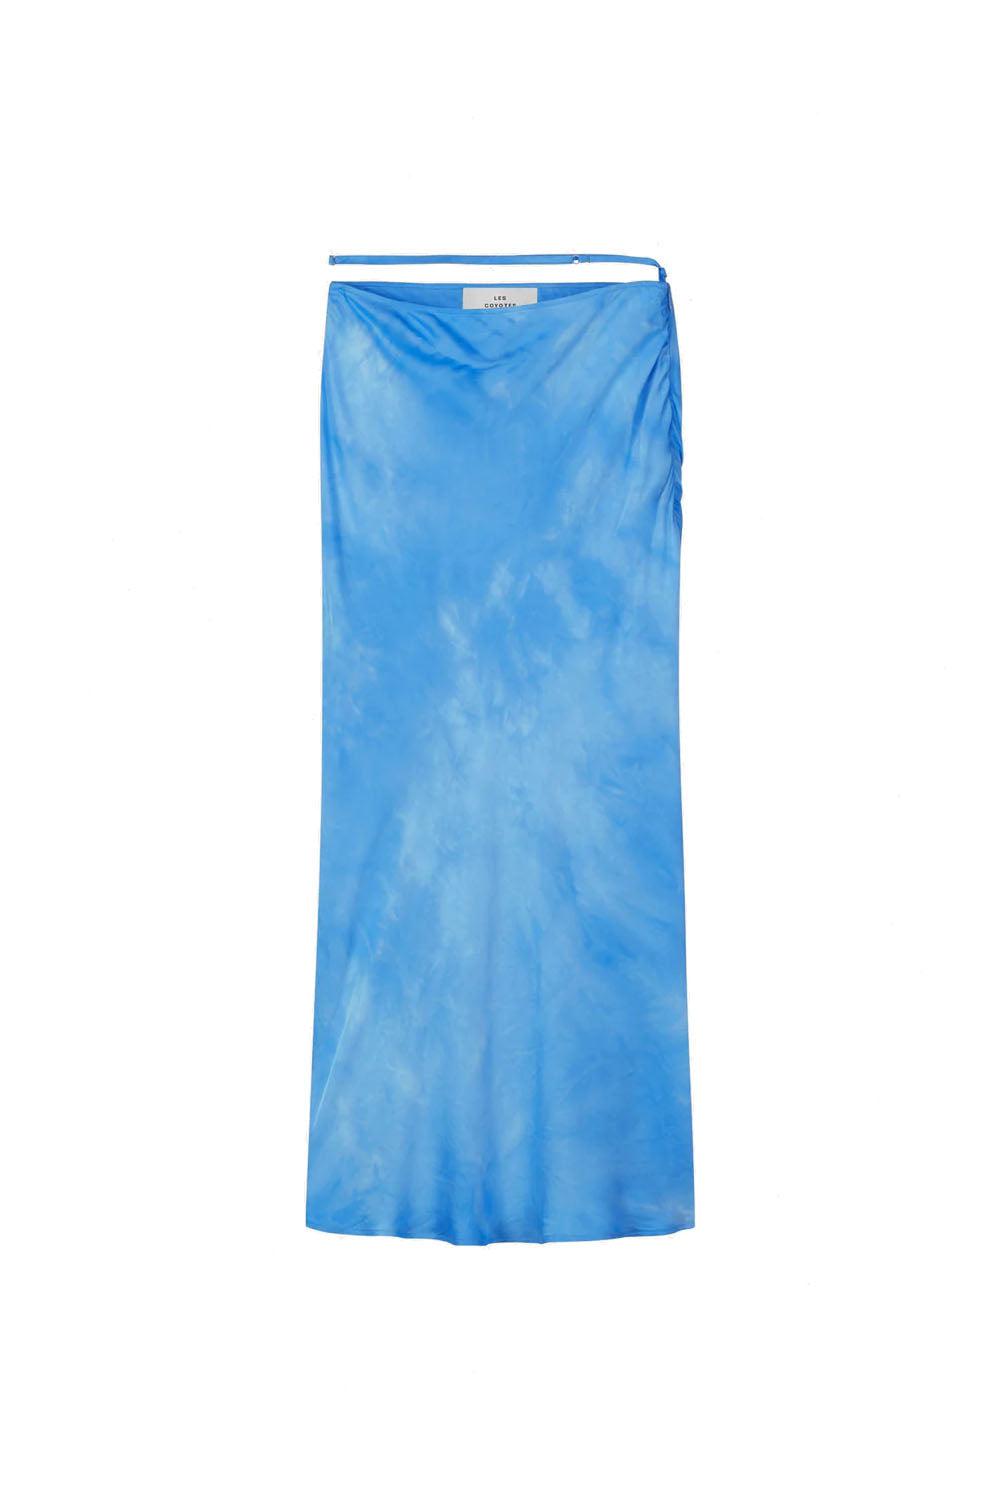 Fluid Skirt maya blue tie dye